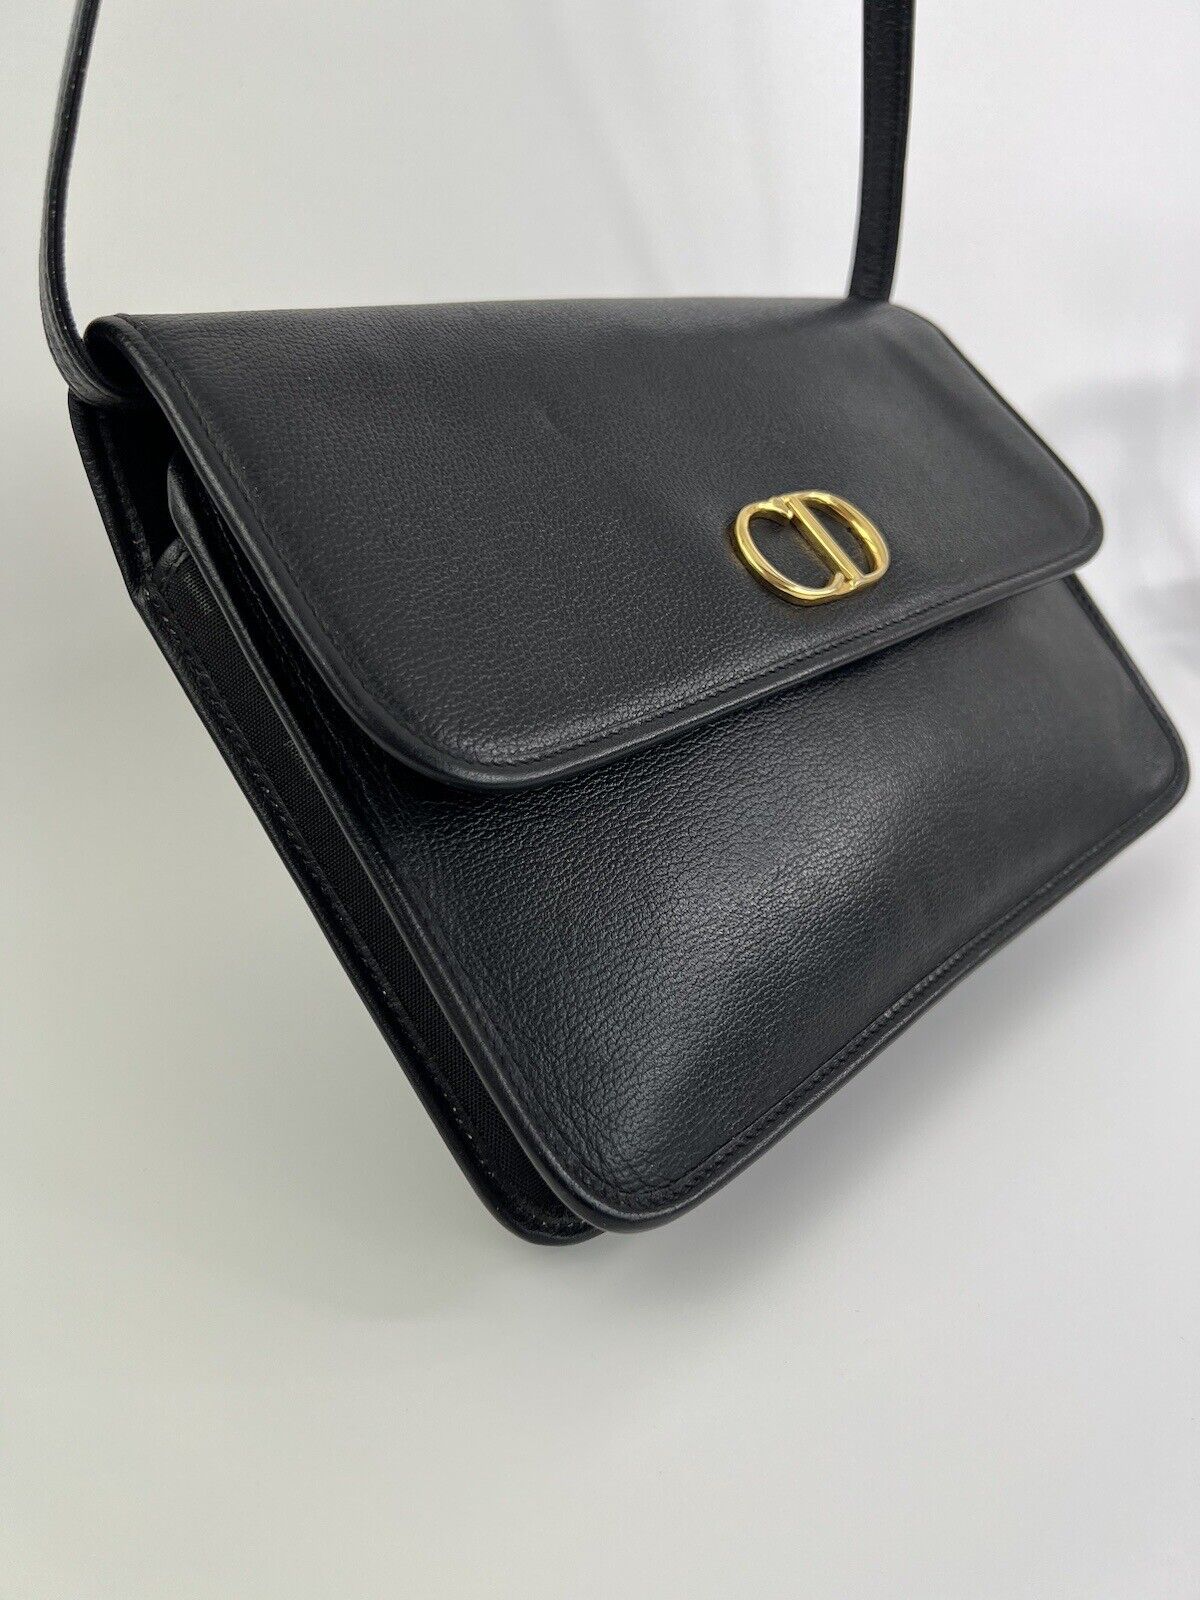 Christian Dior Bag Vintage Dior  Black  Bag leather Logo 3 Ways Shoulder Cross body Clutch Bag made in France